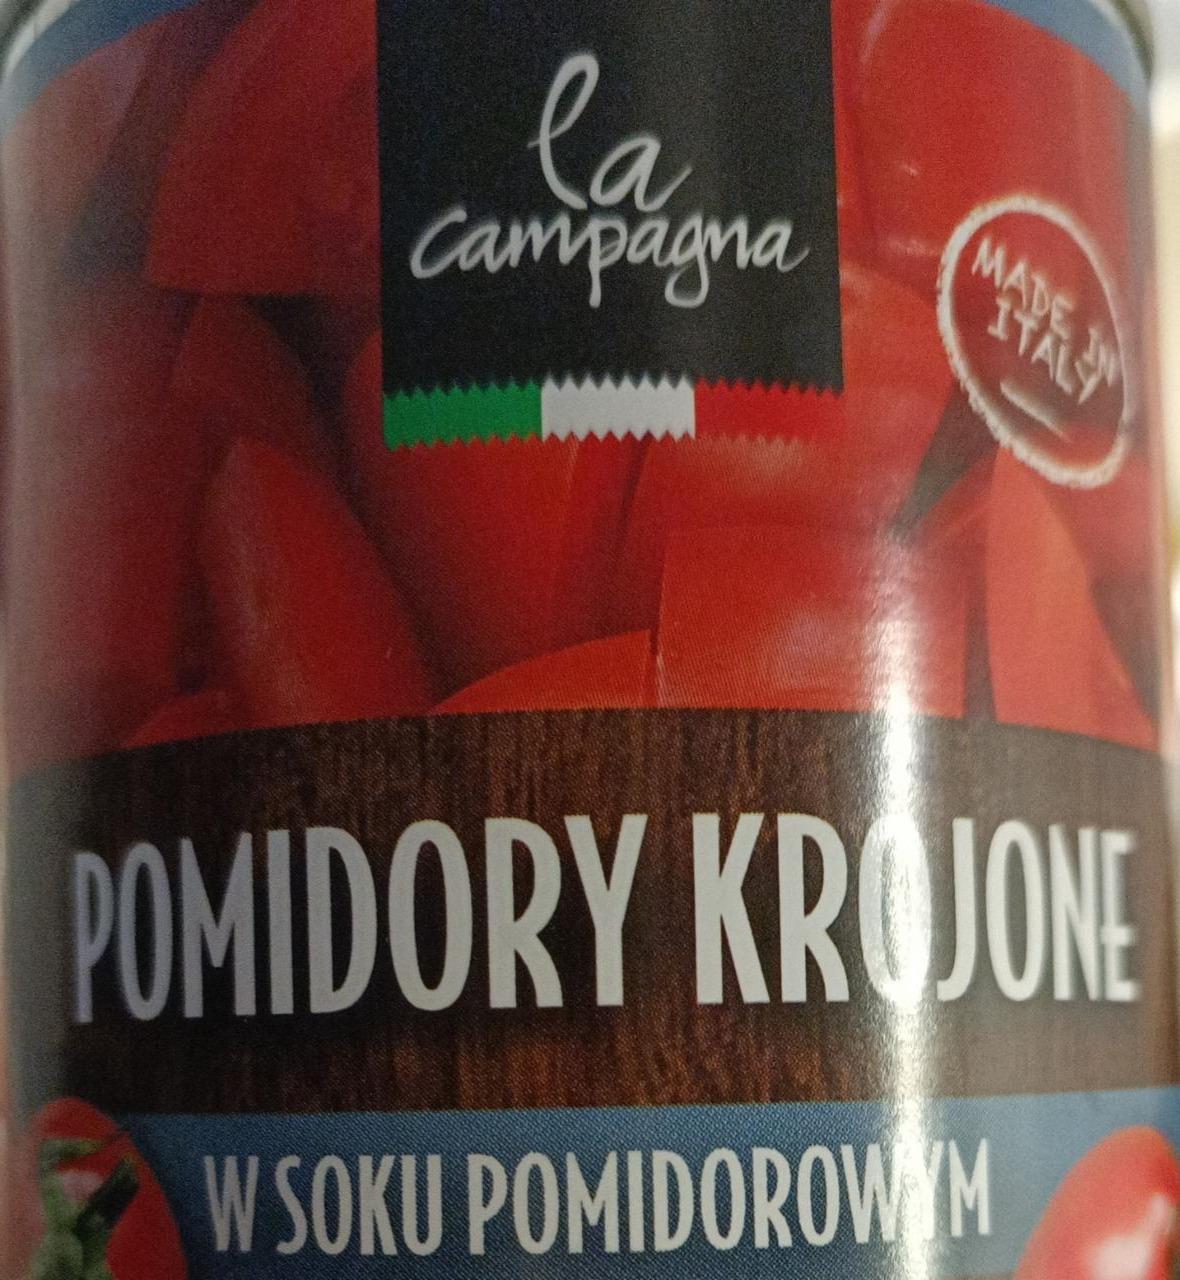 Zdjęcia - La Campagna pomidory krojone w soku pomidorowym